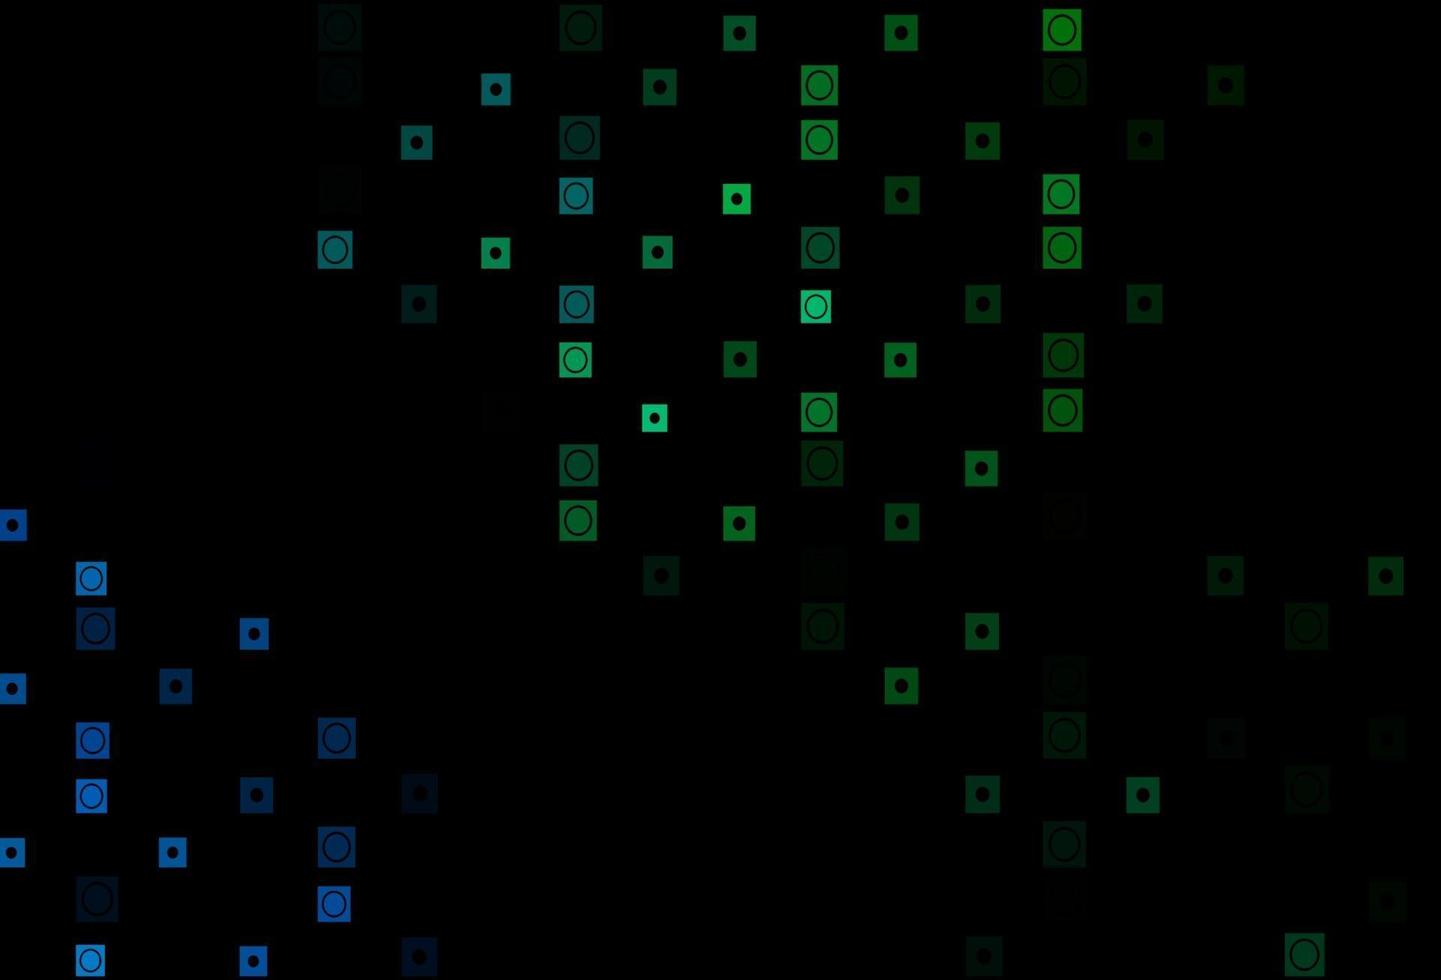 modelo de vetor azul e verde escuro com círculos, retângulos.